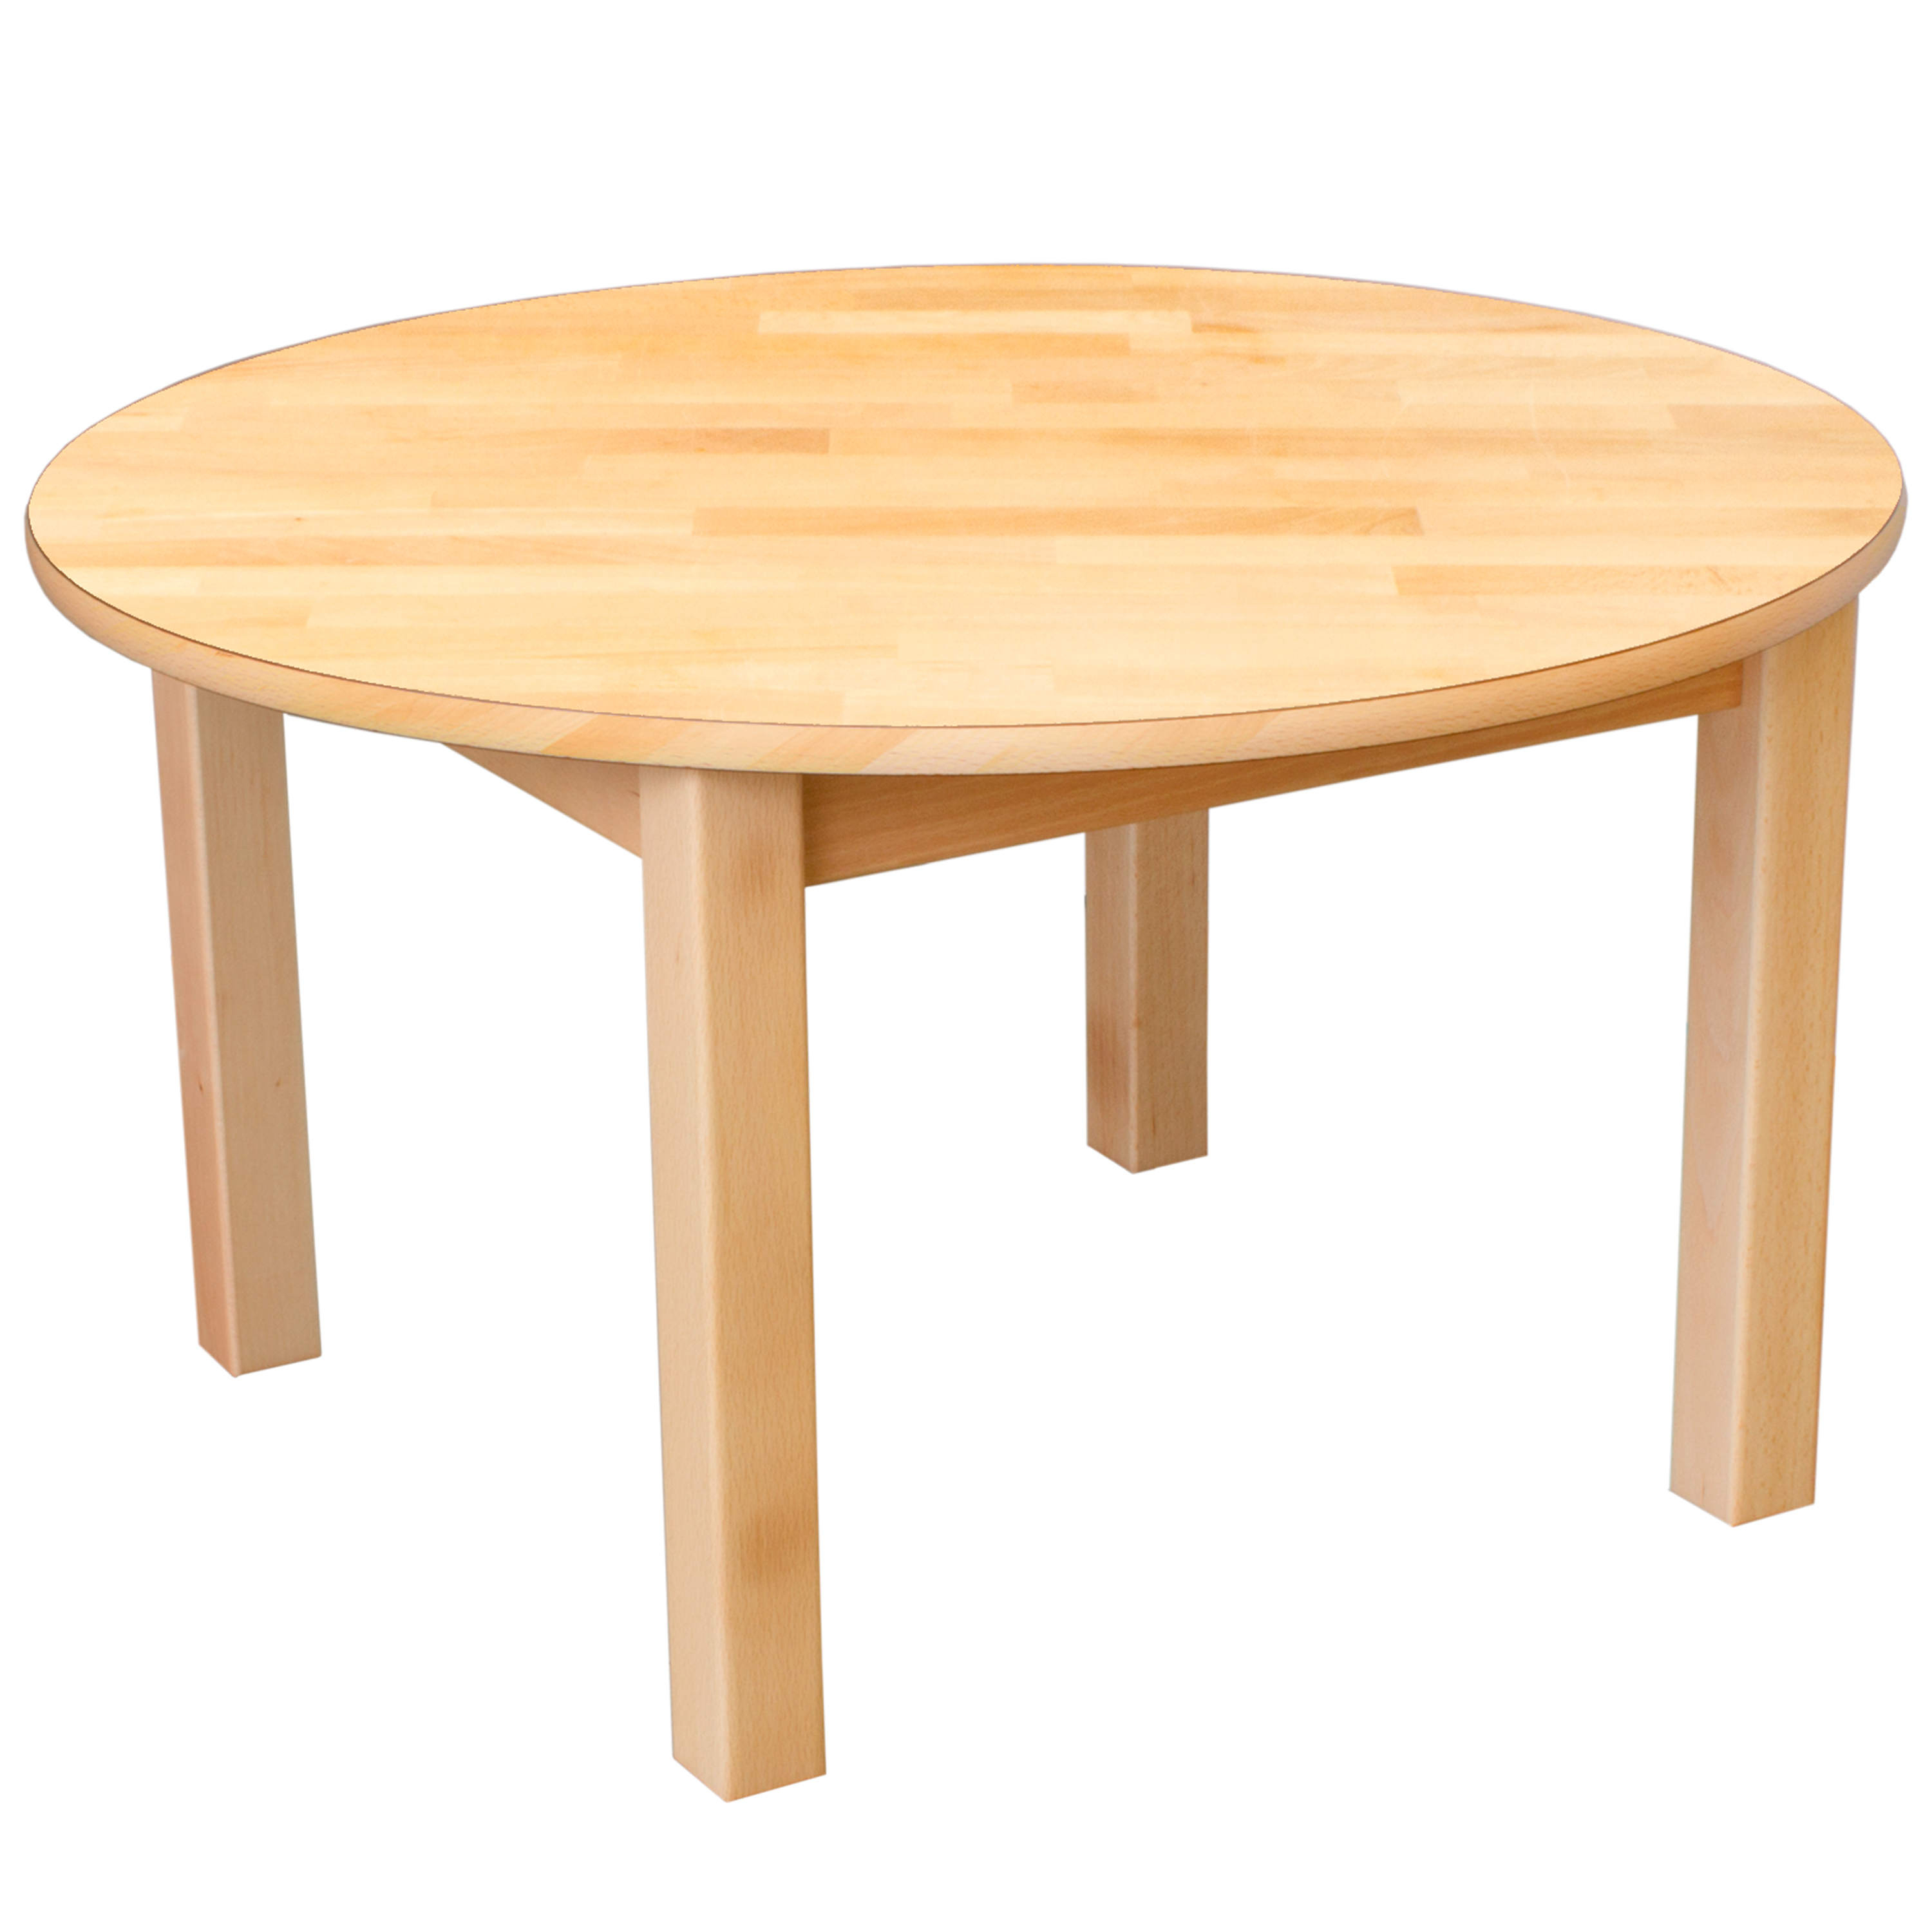 Runder Tisch aus Massivholz, Ø 80 cm, Tischhöhe 40 cm